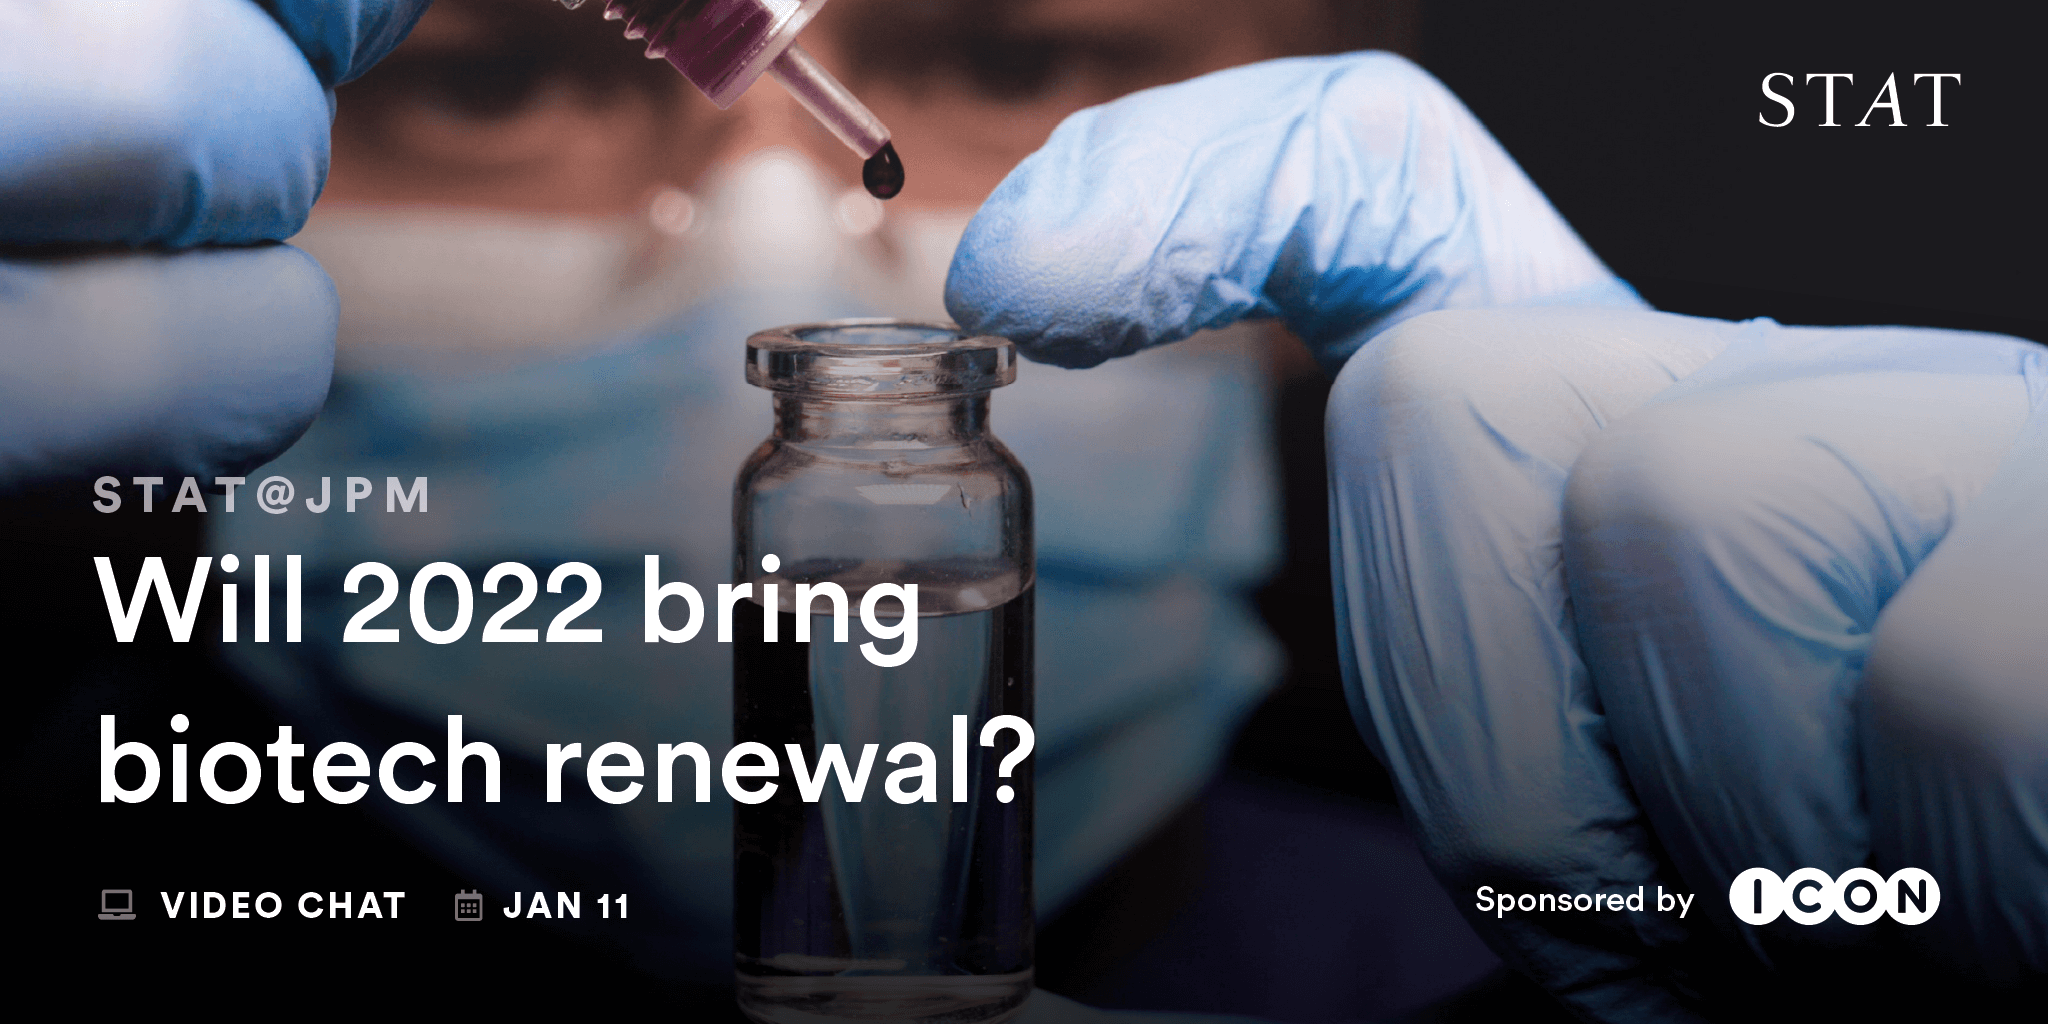 STAT@JPM: Will 2022 bring biotech renewal?